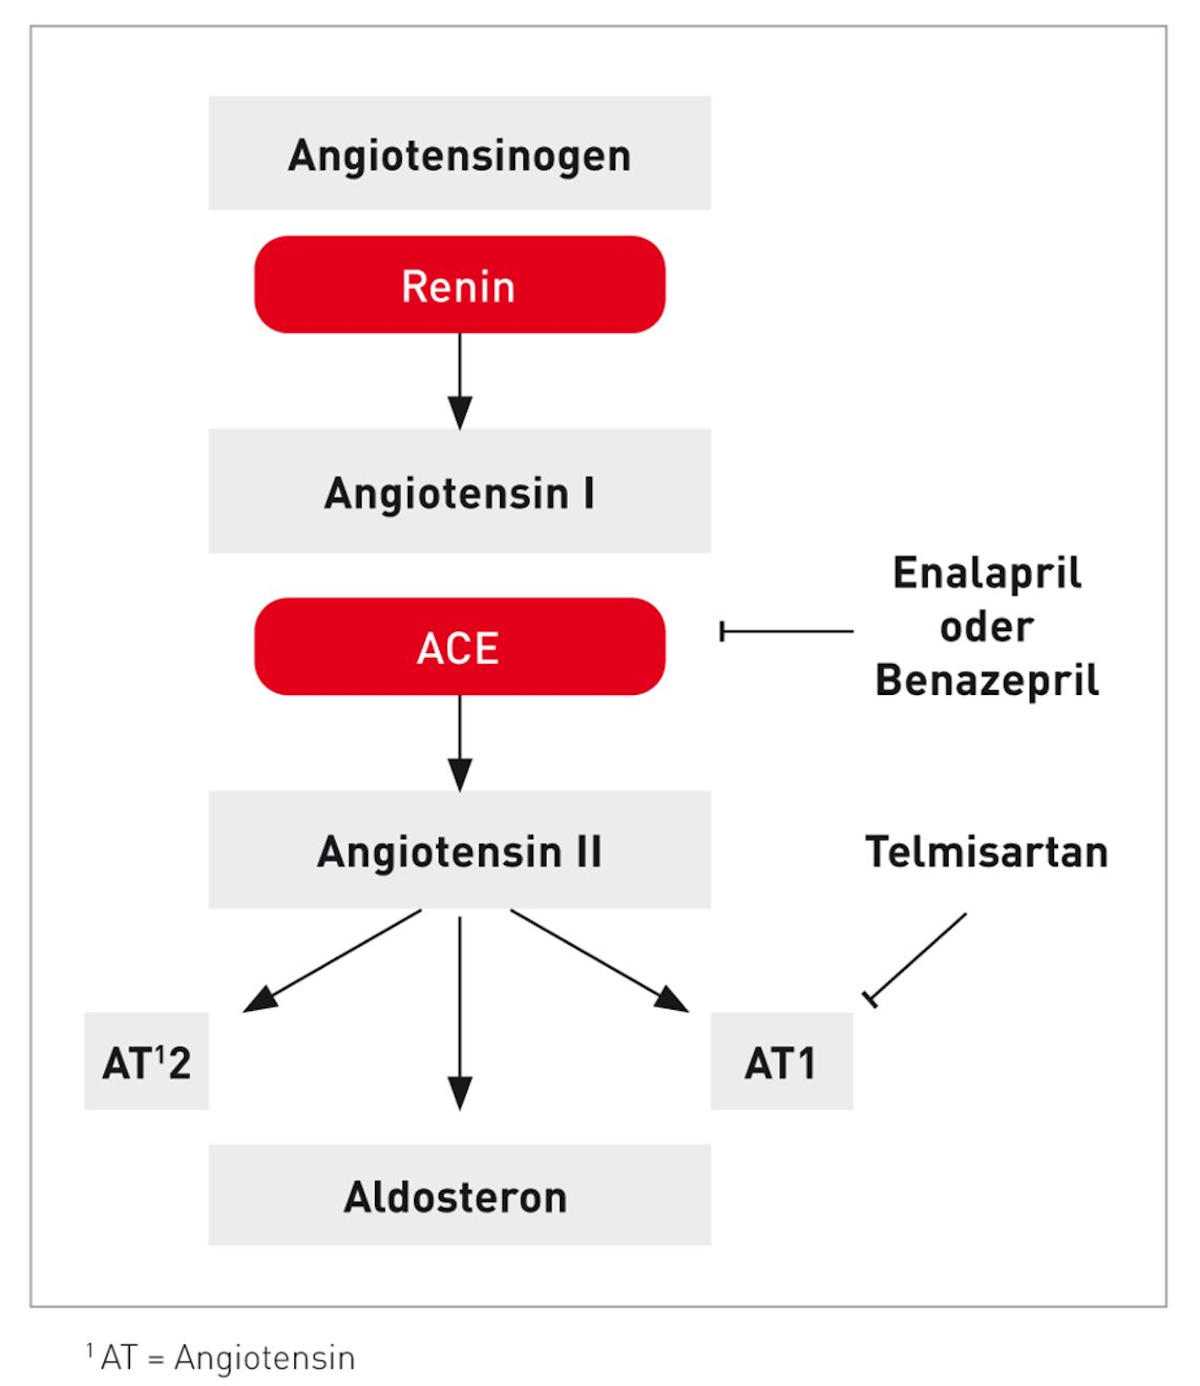 Das Renin-Angiotensin-Aldosteron-System und die Wirkstellen der bei Katzen am häufigsten eingesetzten RAAS-Hemmer